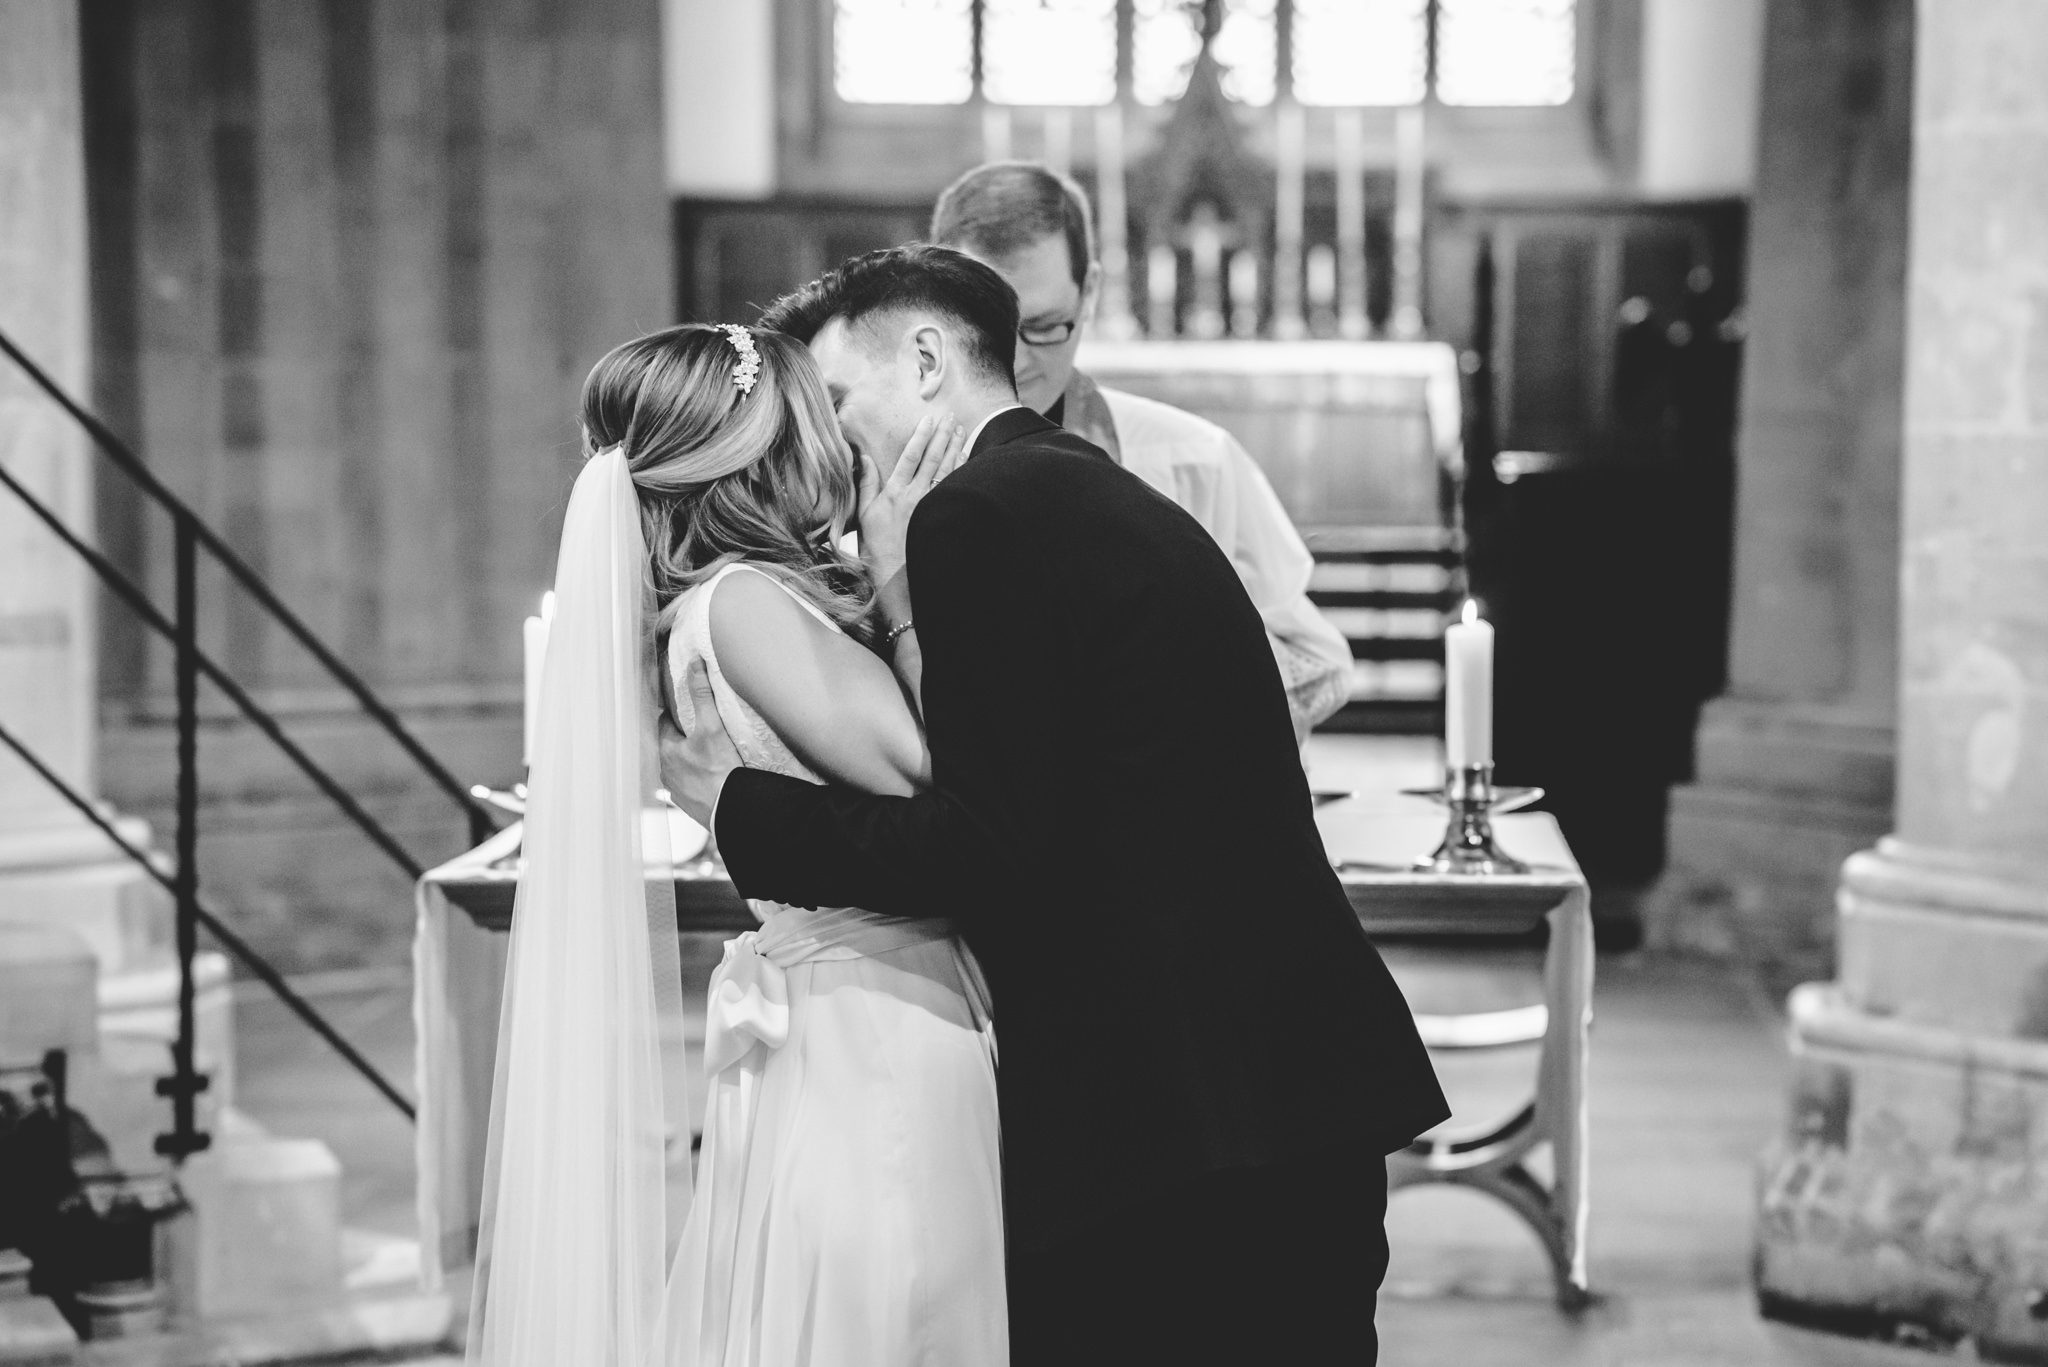 Firs kiss at a church wedding